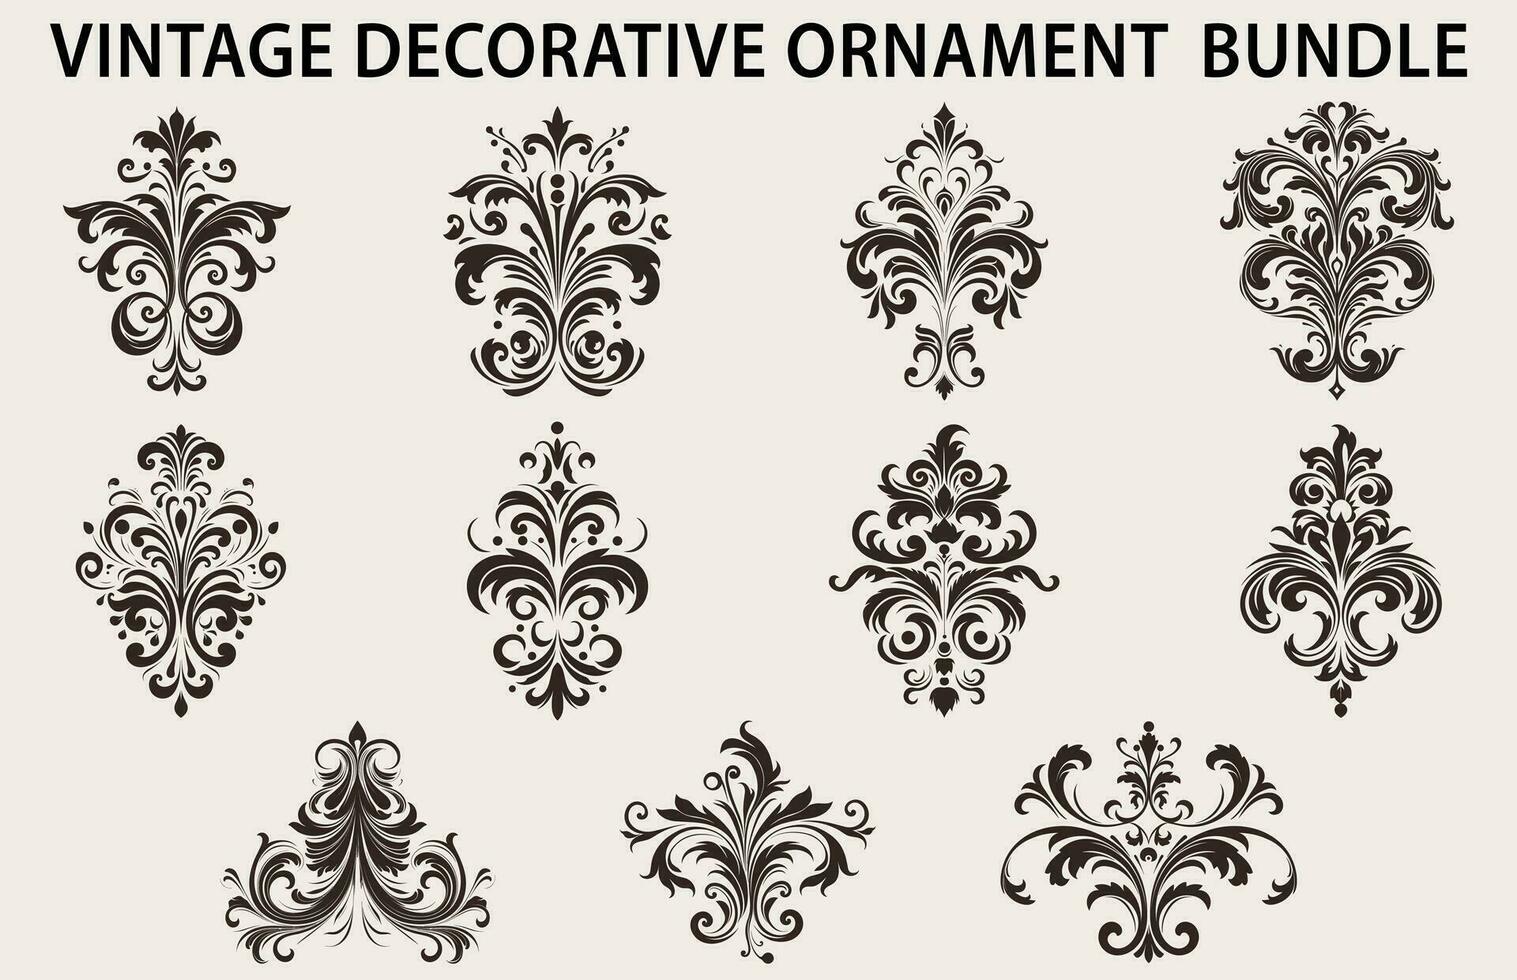 wijnoogst typografisch ontwerp element vector bundel, reeks van kalligrafische vector decoratief ornament element